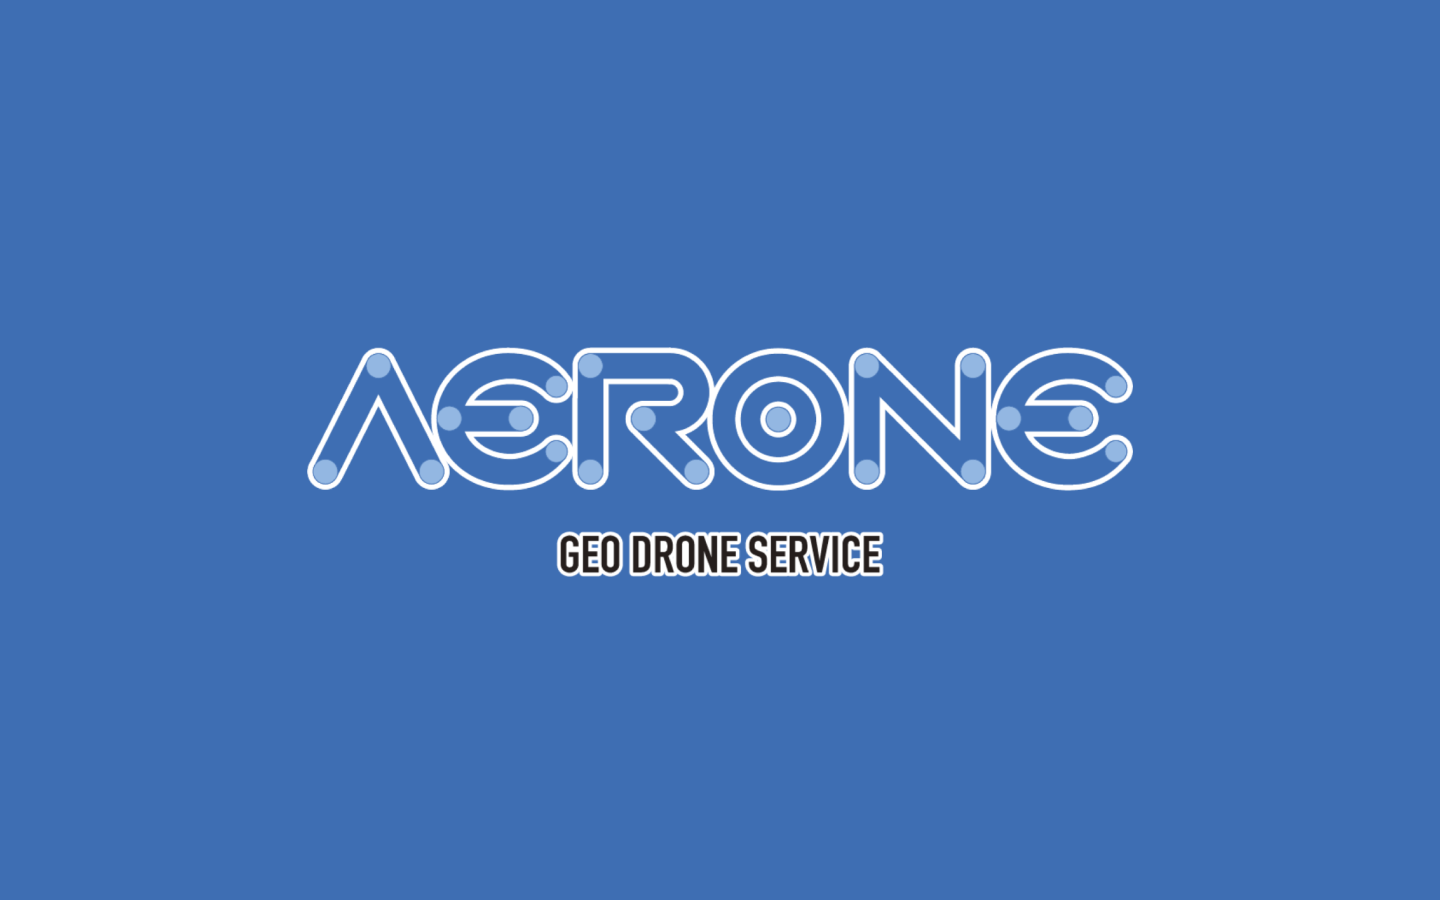 ドローンプラットフォーム「AERRON(エアロン)」のご紹介